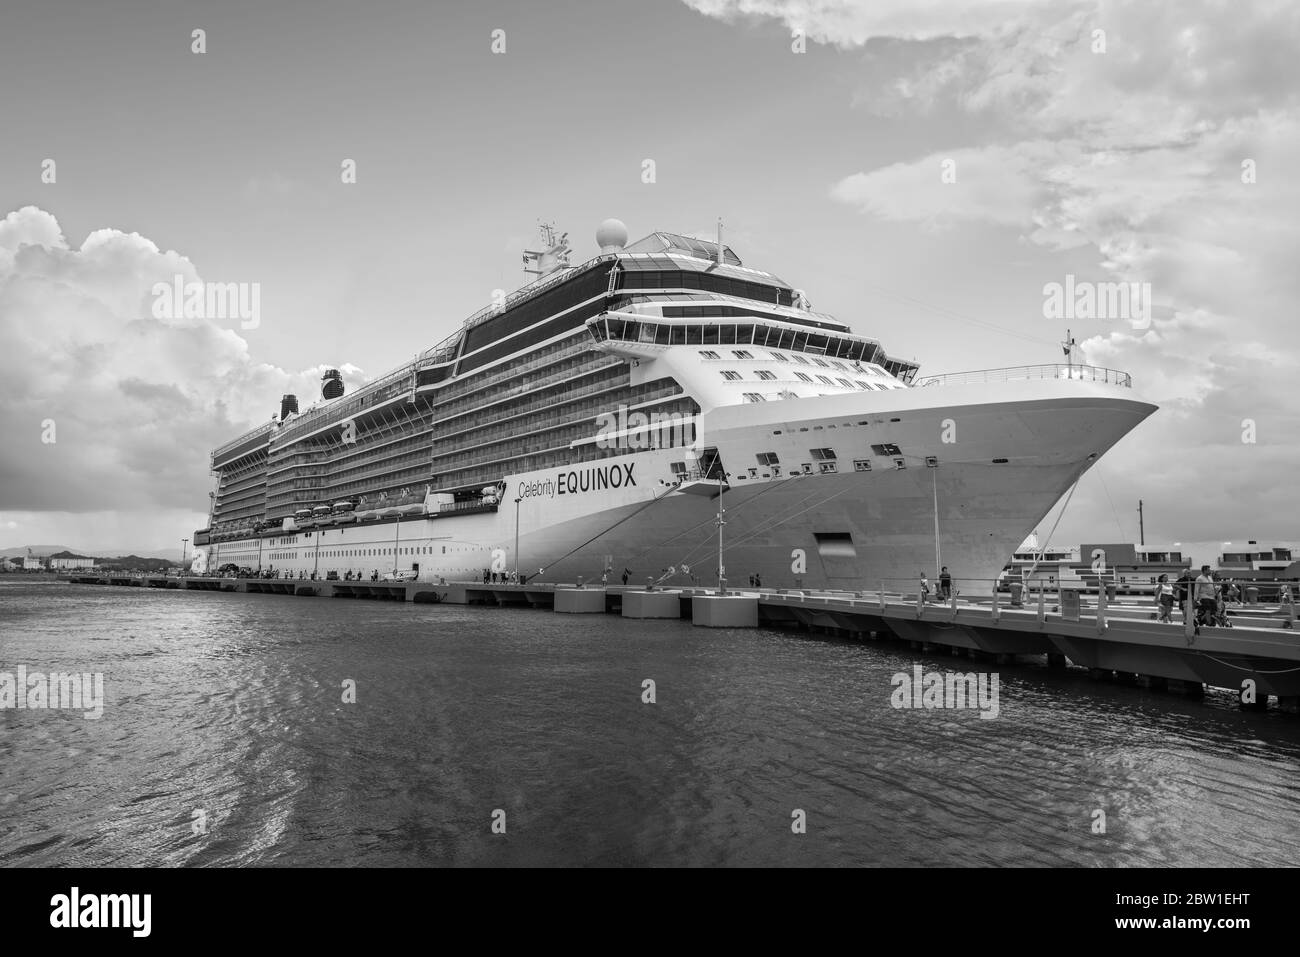 San Juan, Puerto Rico - 29 de abril de 2019: Crucero Equinox Celebrity en el Puerto de San Juan, Puerto Rico, Caribe. Fotografía en blanco y negro. Foto de stock